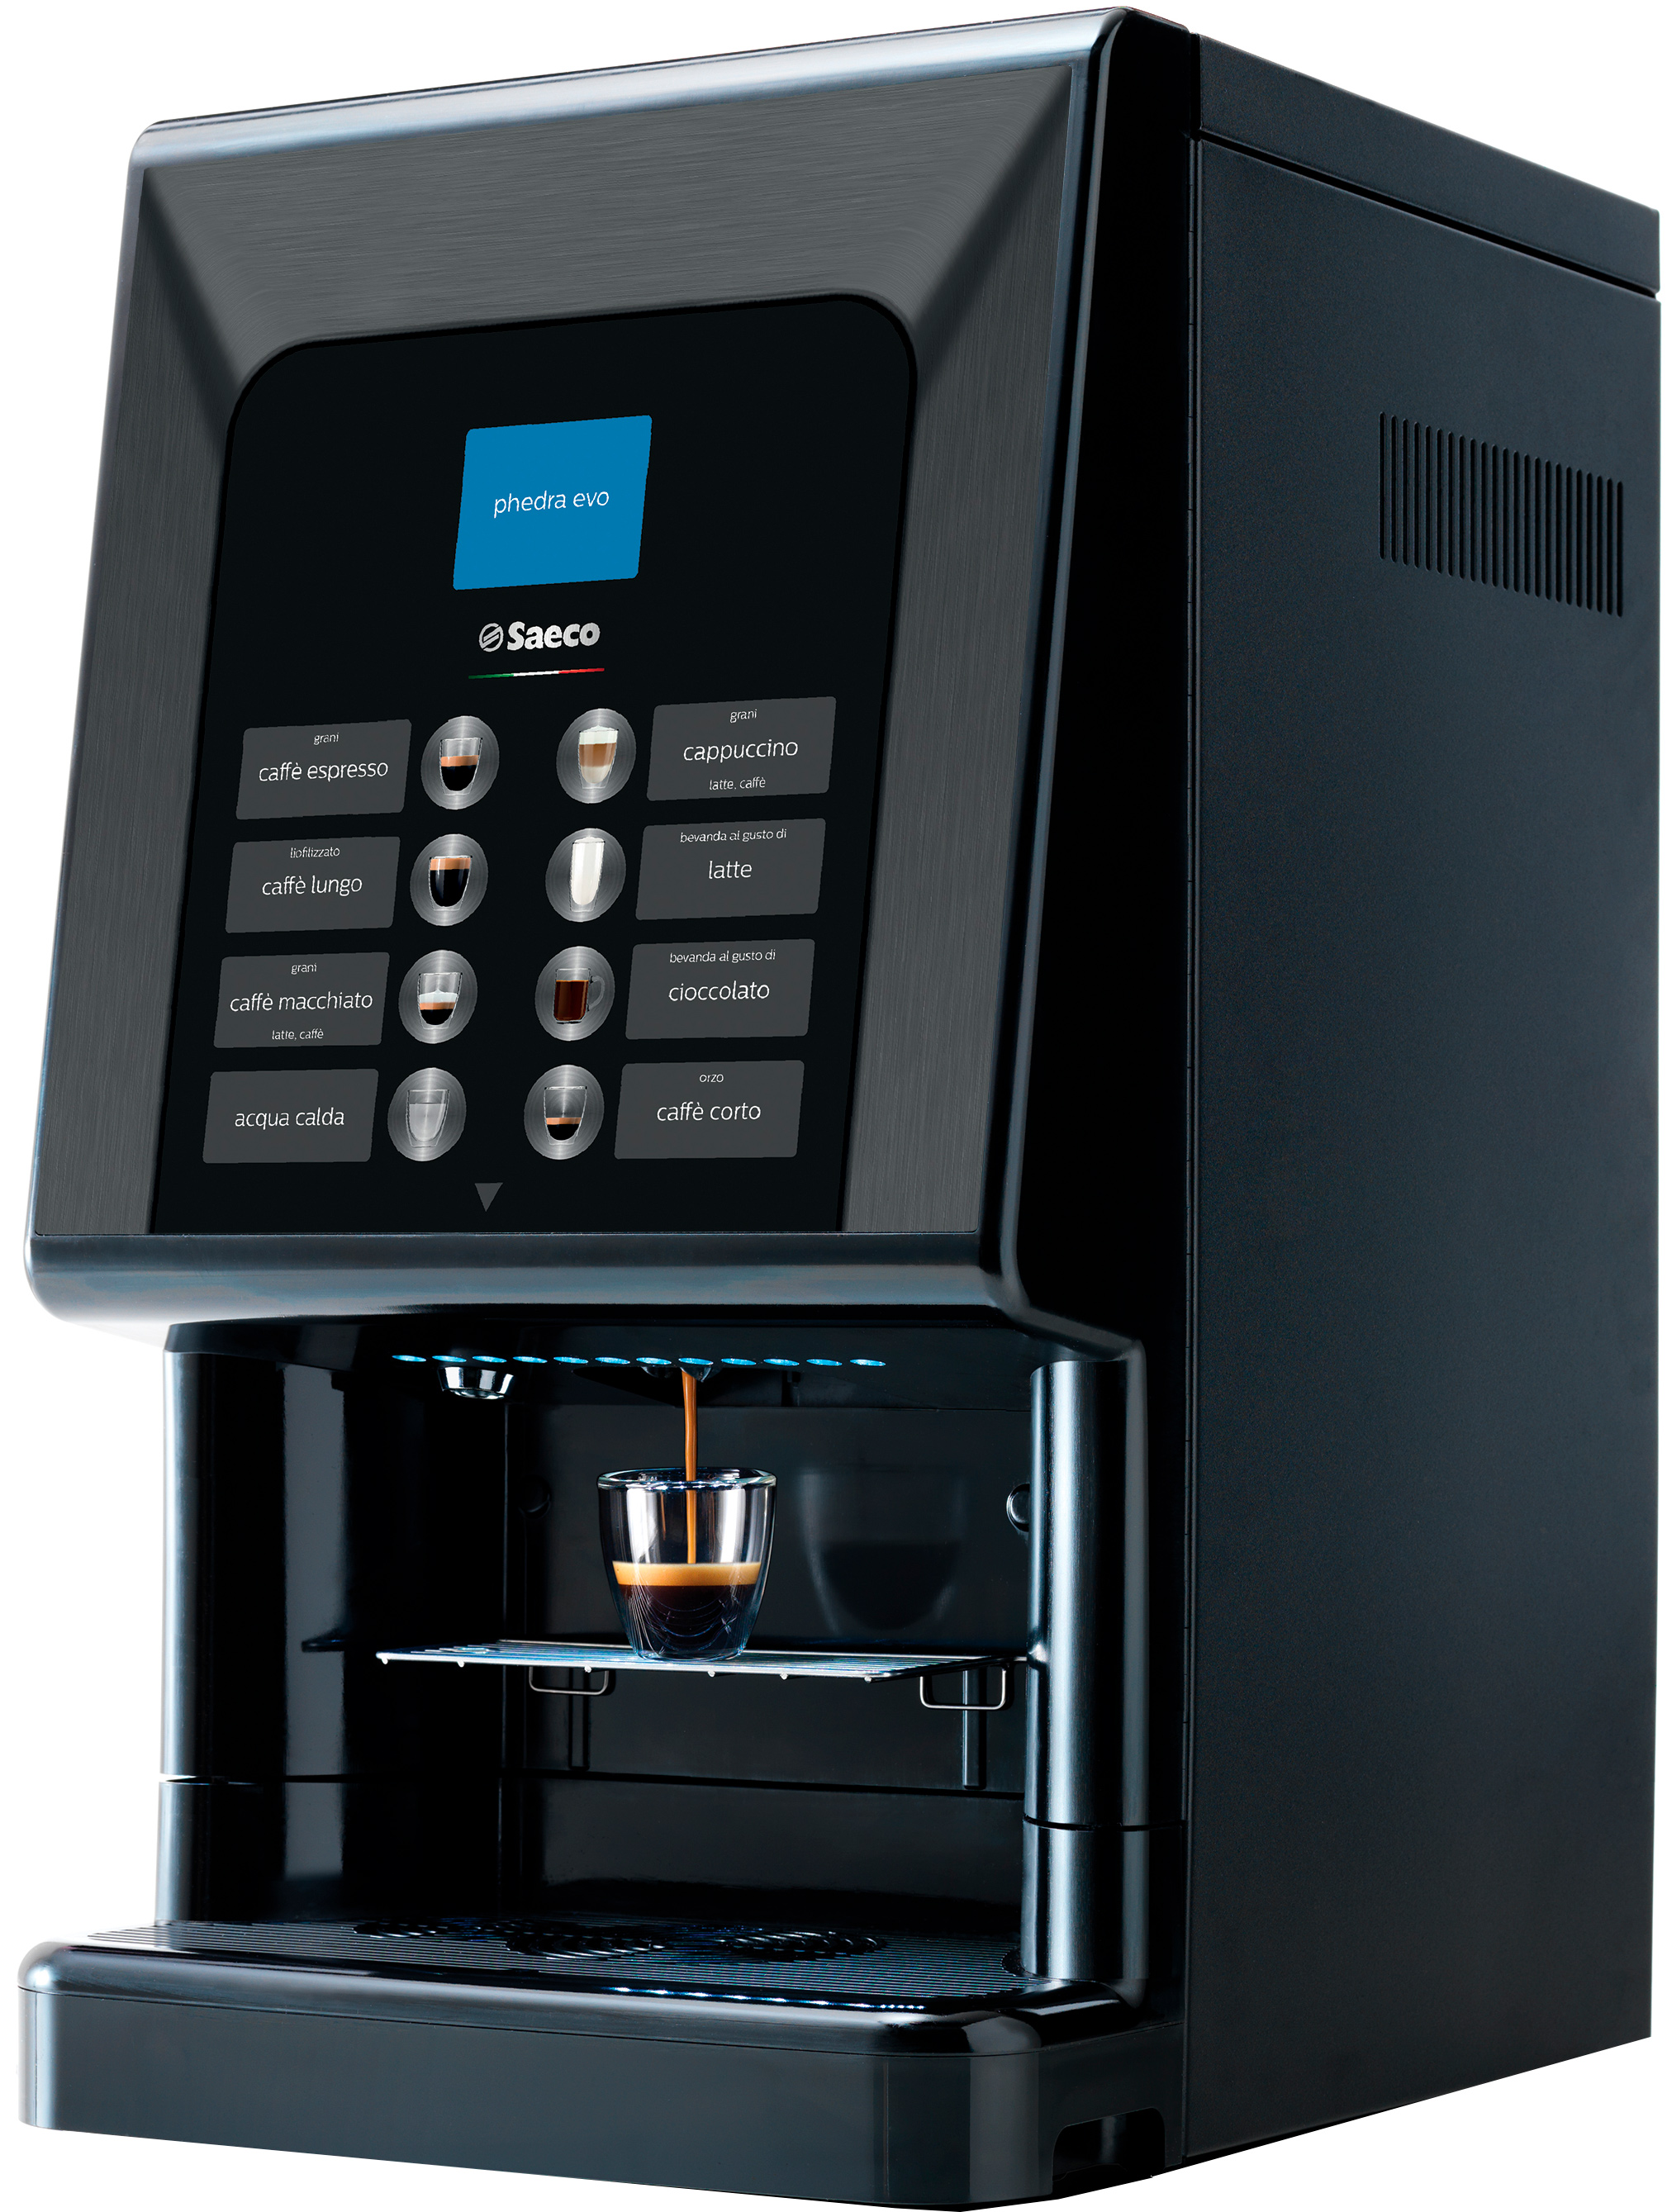 Кофейный автомат Saeco Phedra Evo Espresso фото